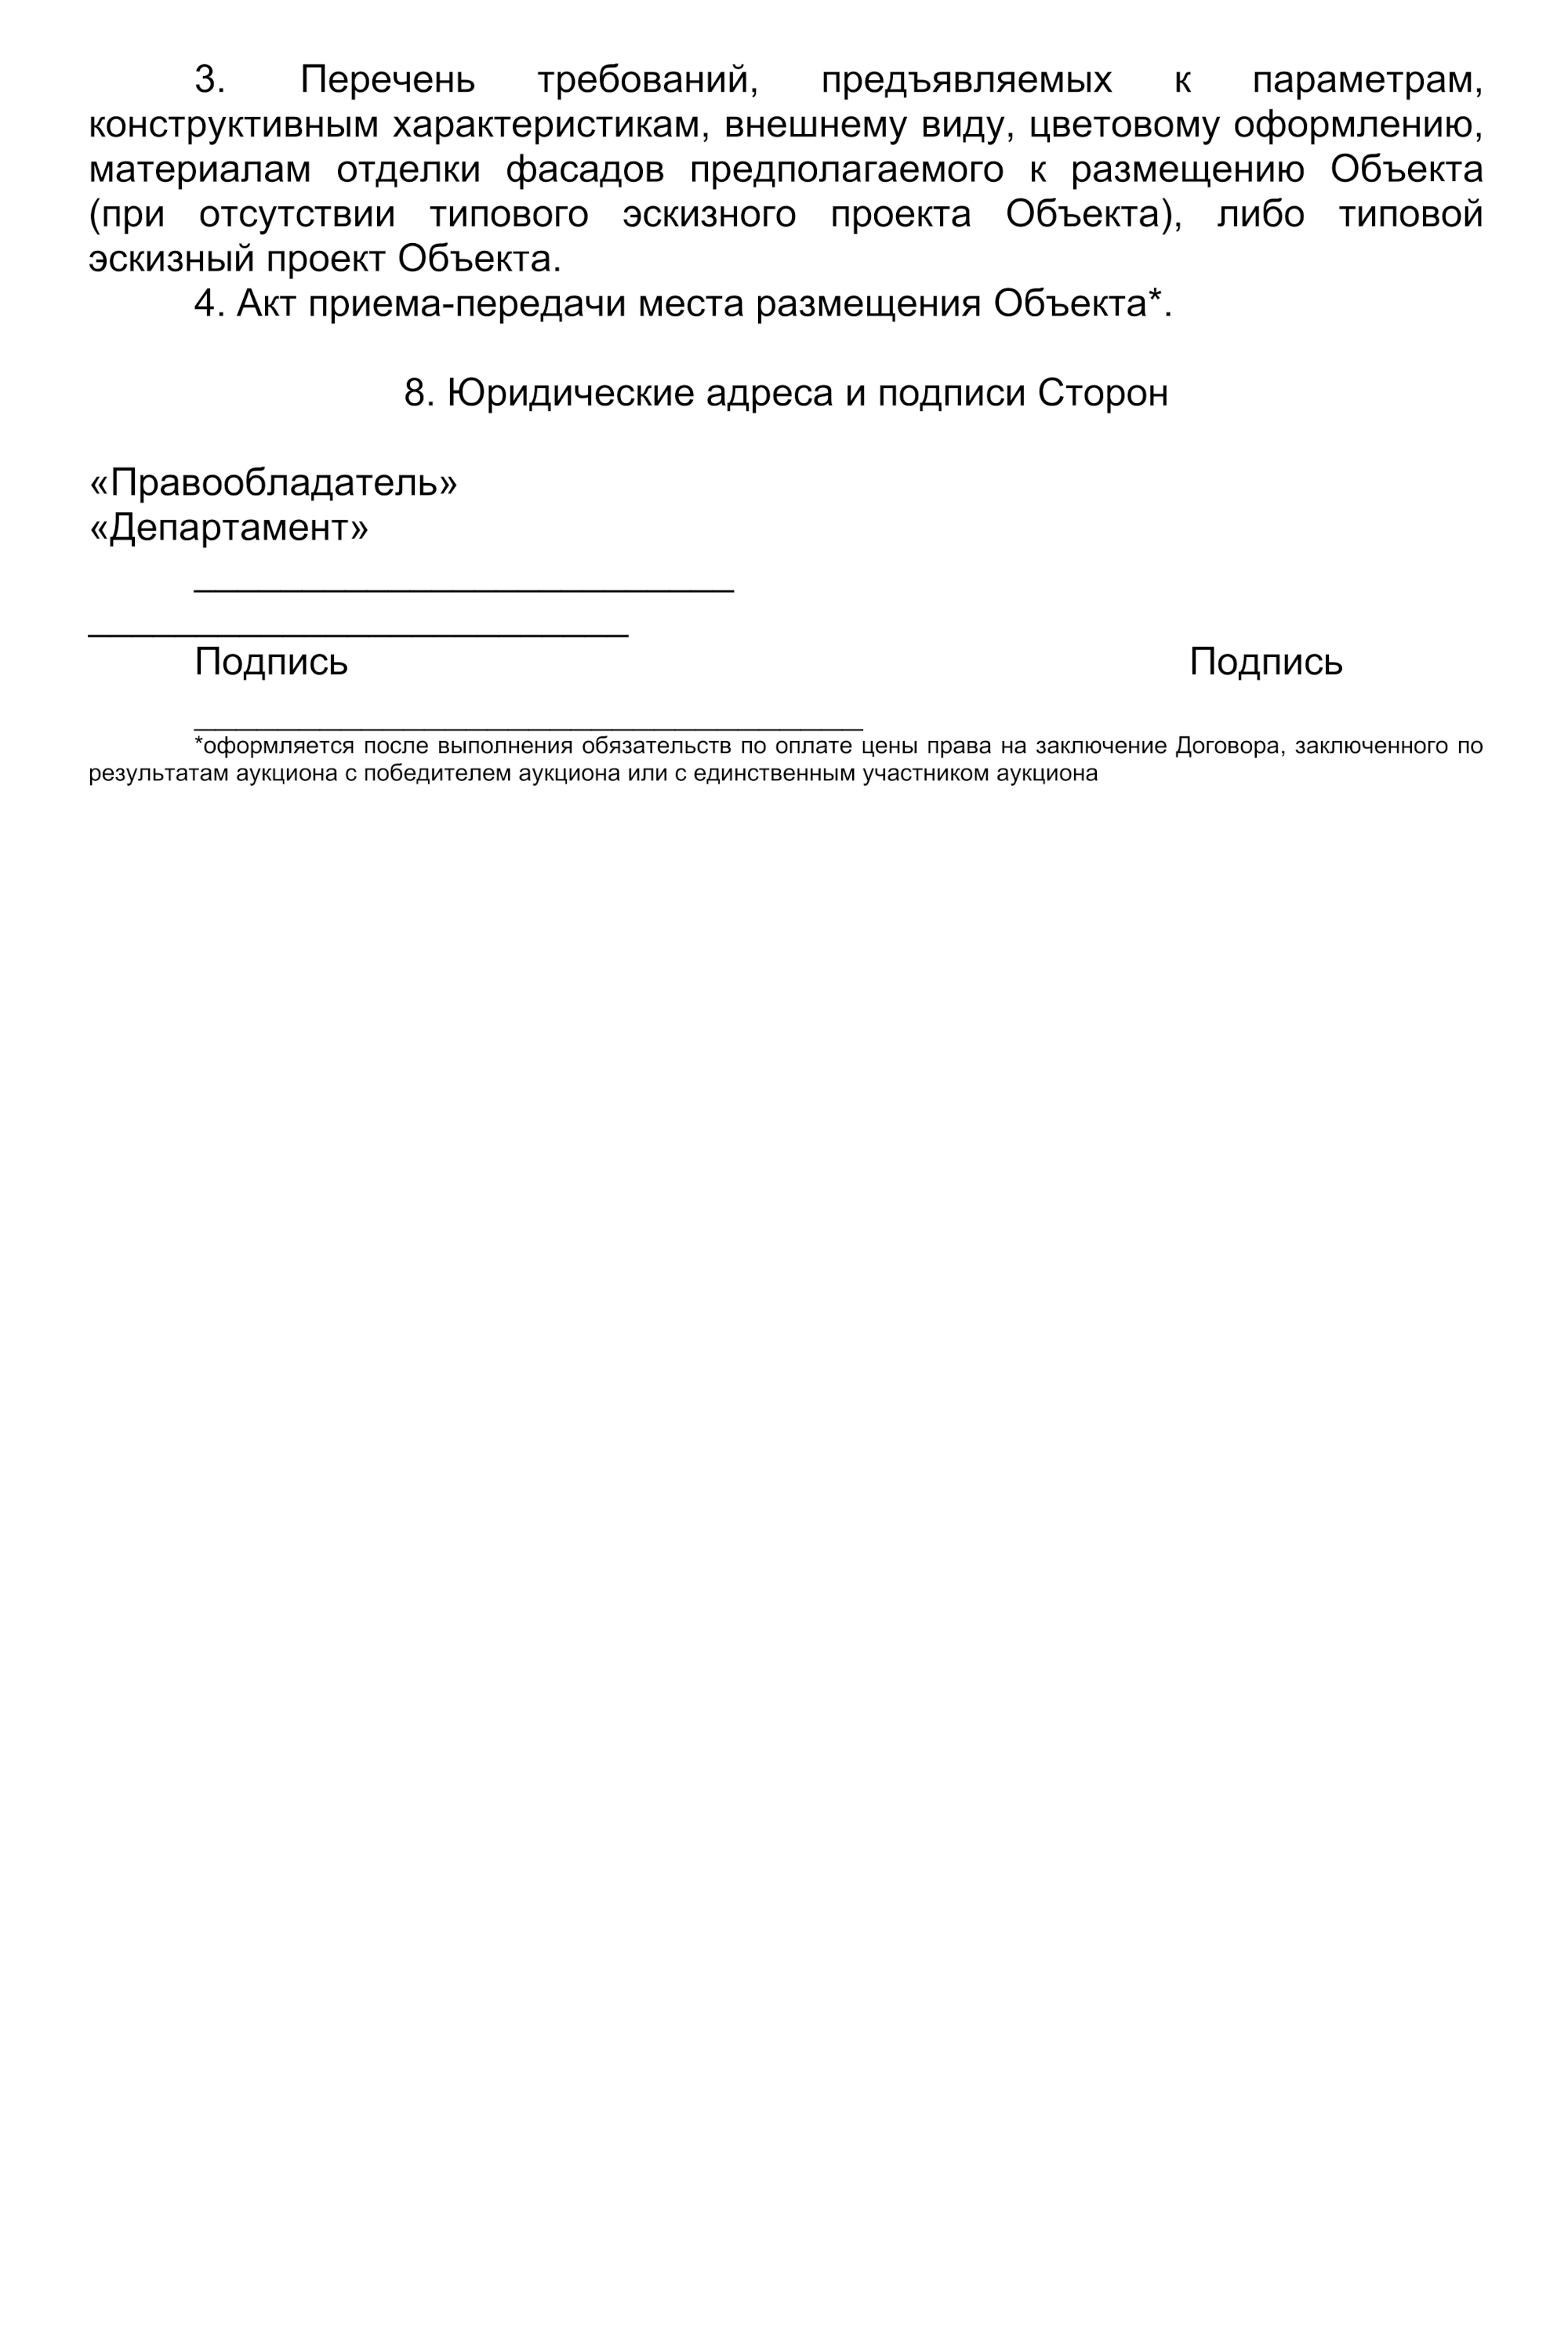 Вот примерная форма договора на размещение НТО. Источник: tyumen-city.ru